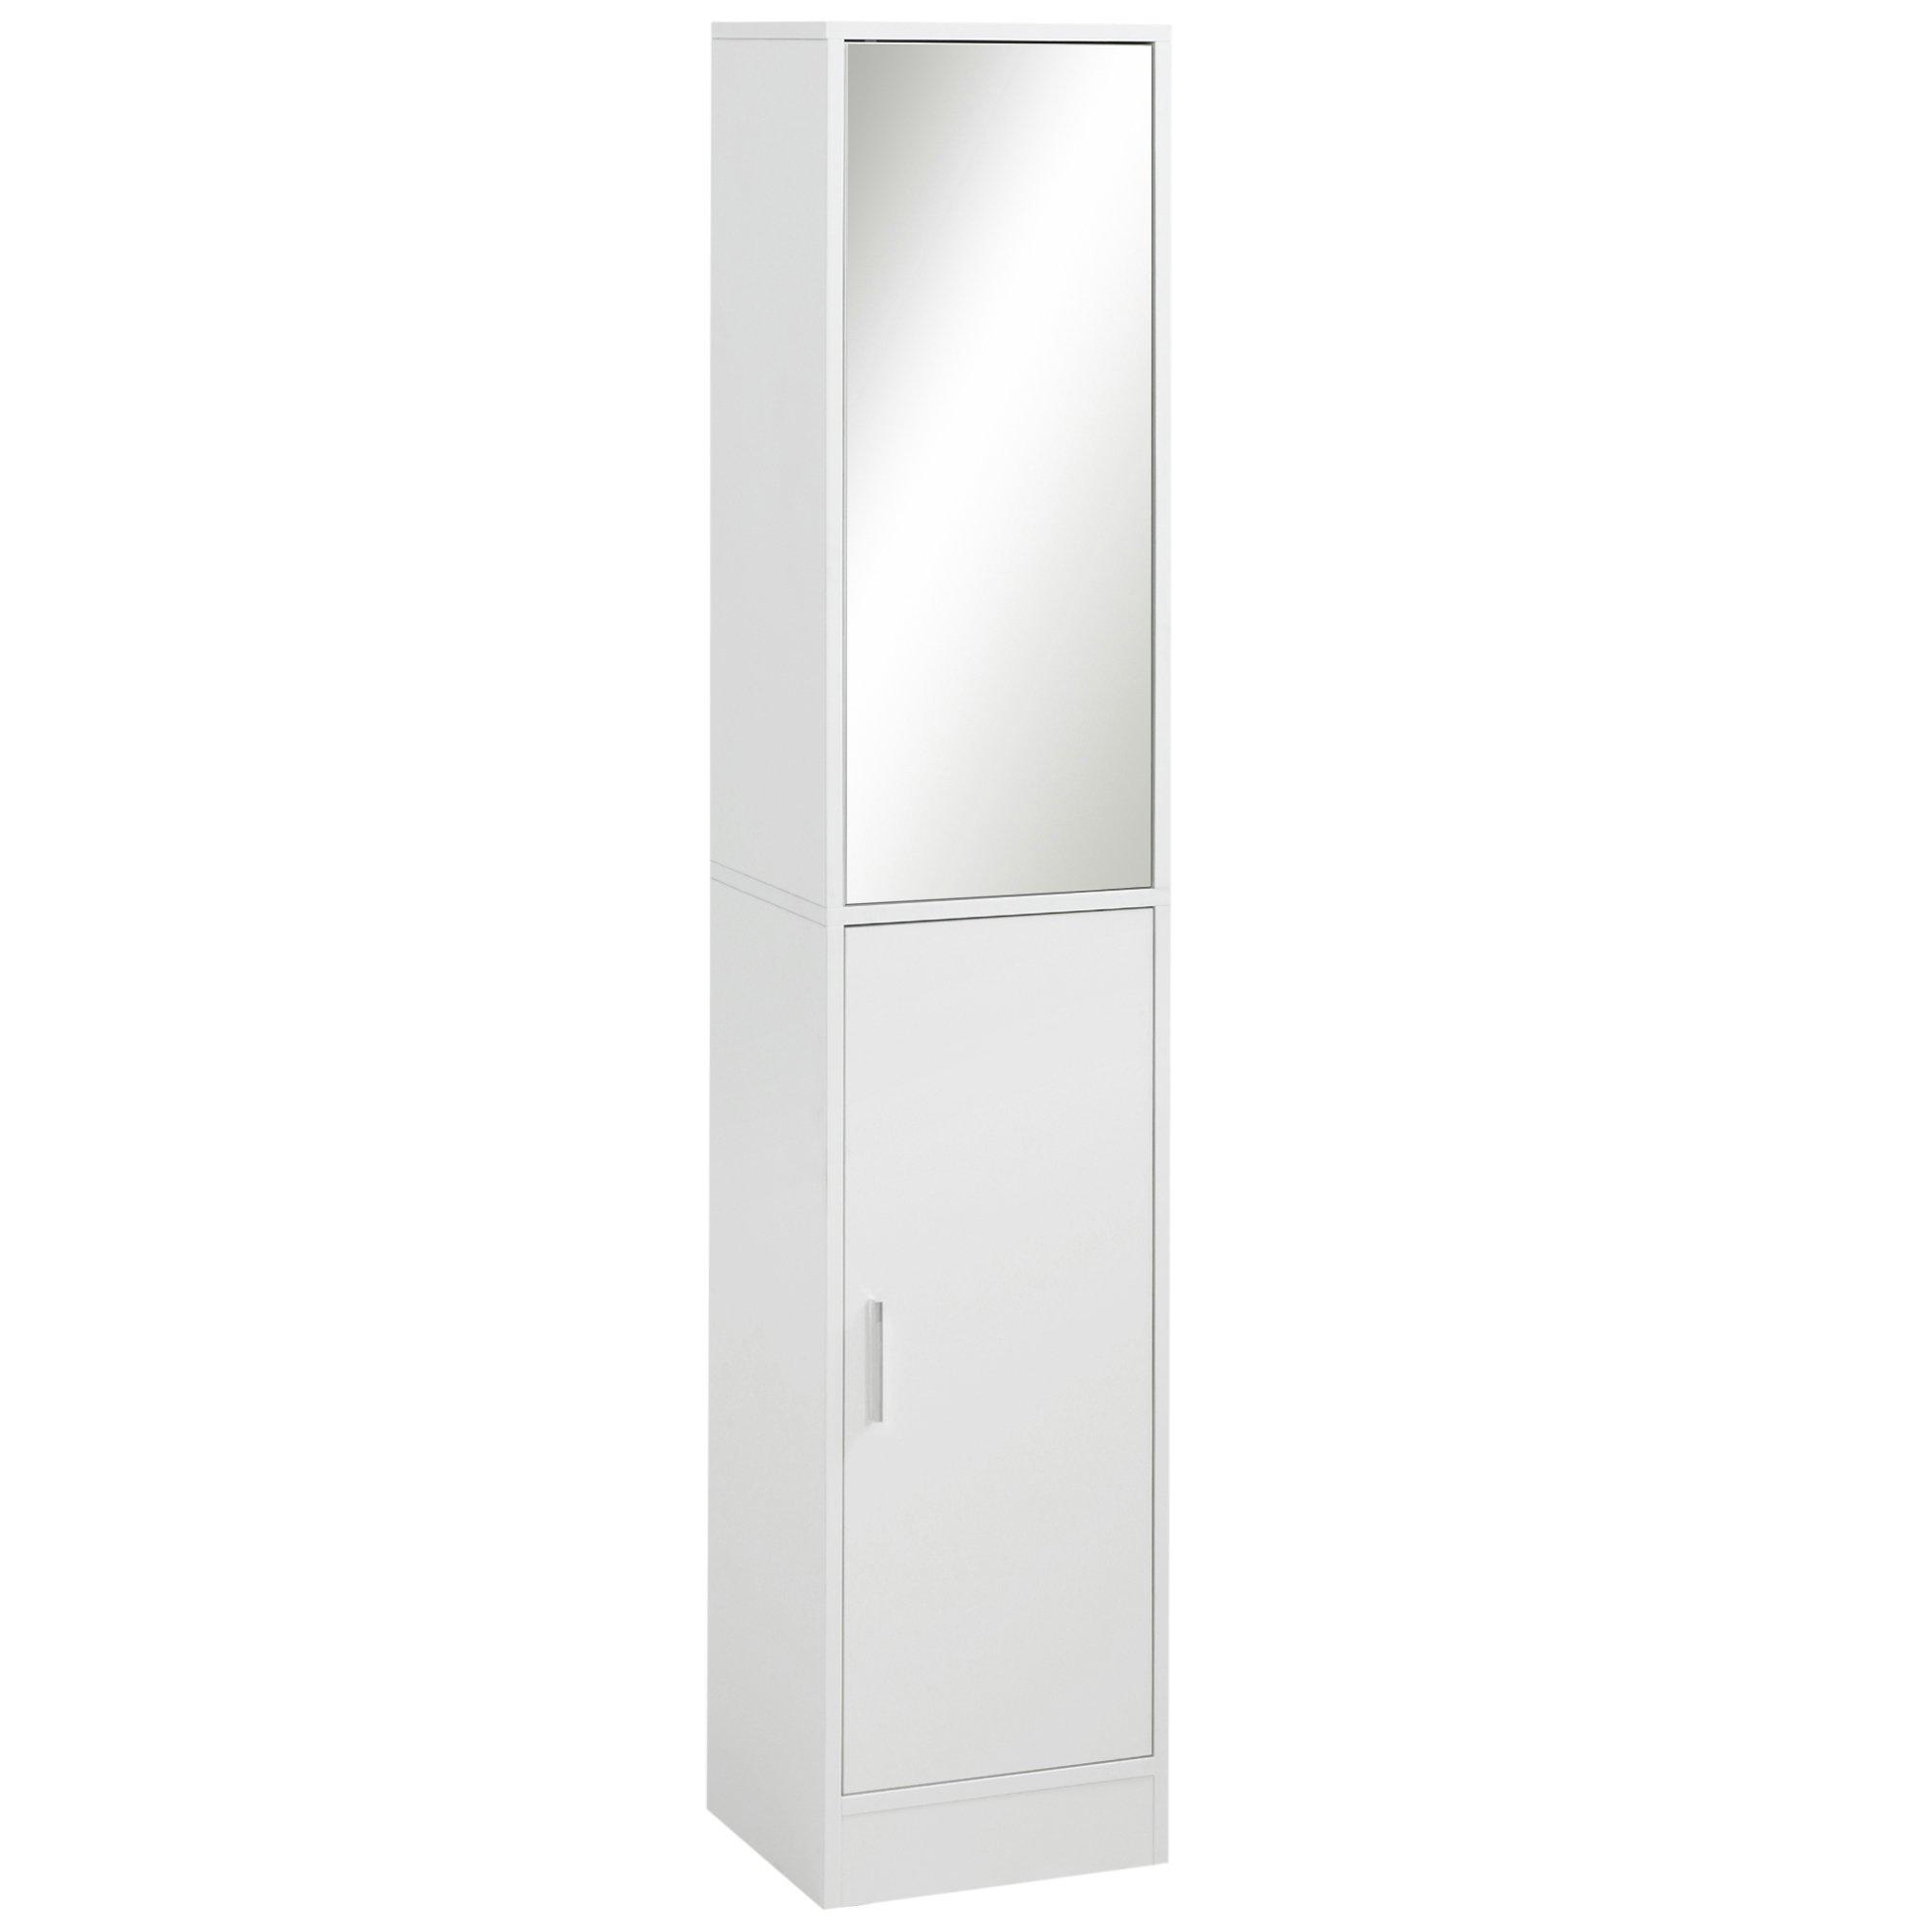 Tall Mirrored Bathroom Cabinet Bathroom Storage Cupboard Tallboy Unit